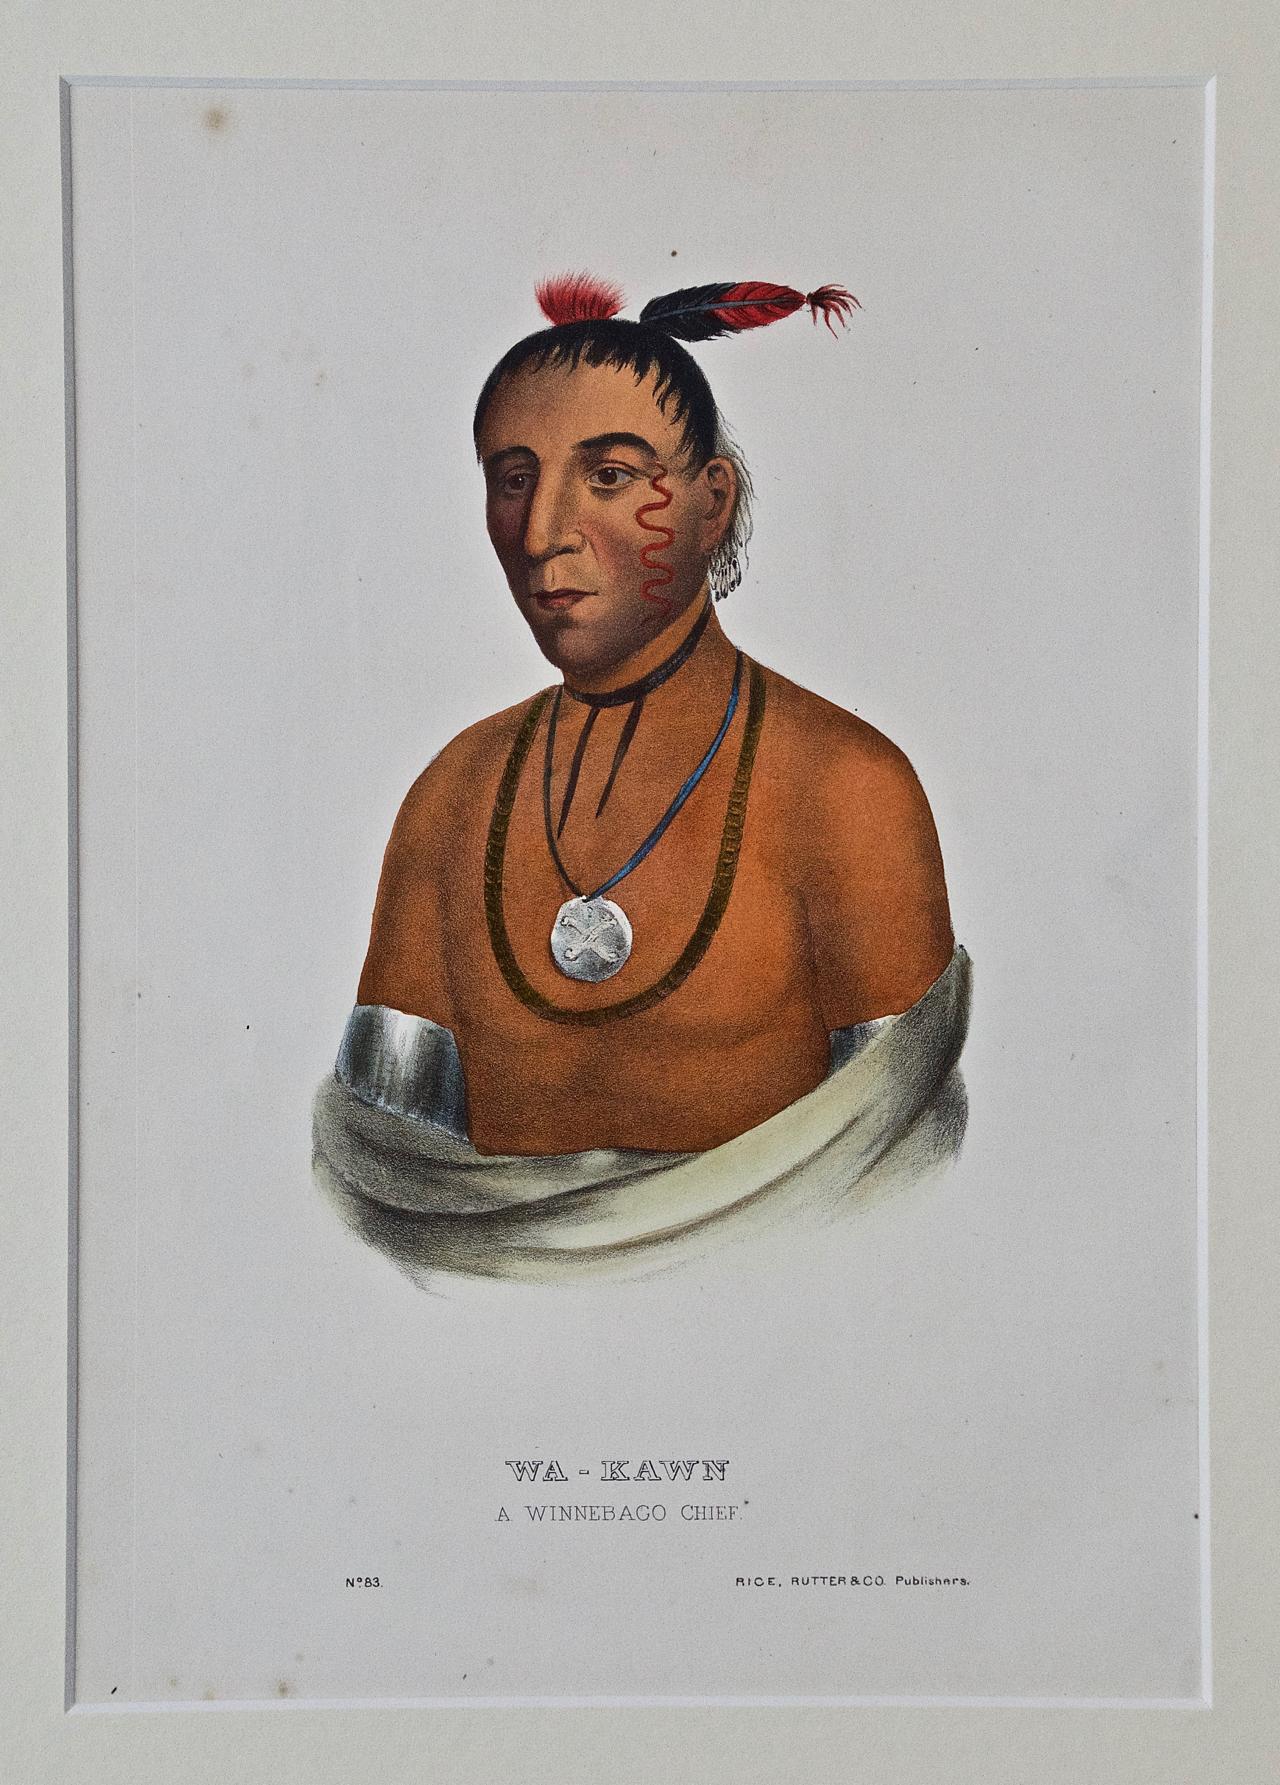 Il s'agit d'une gravure McKenney et Hall originale du 19e siècle, coloriée à la main, représentant un Amérindien et intitulée "Wa-Kawn, A Winnebago Chief, No. 83 (The Snake)", publiée par Rice, Rutter & Co. en 1865.

Cette gravure originale de